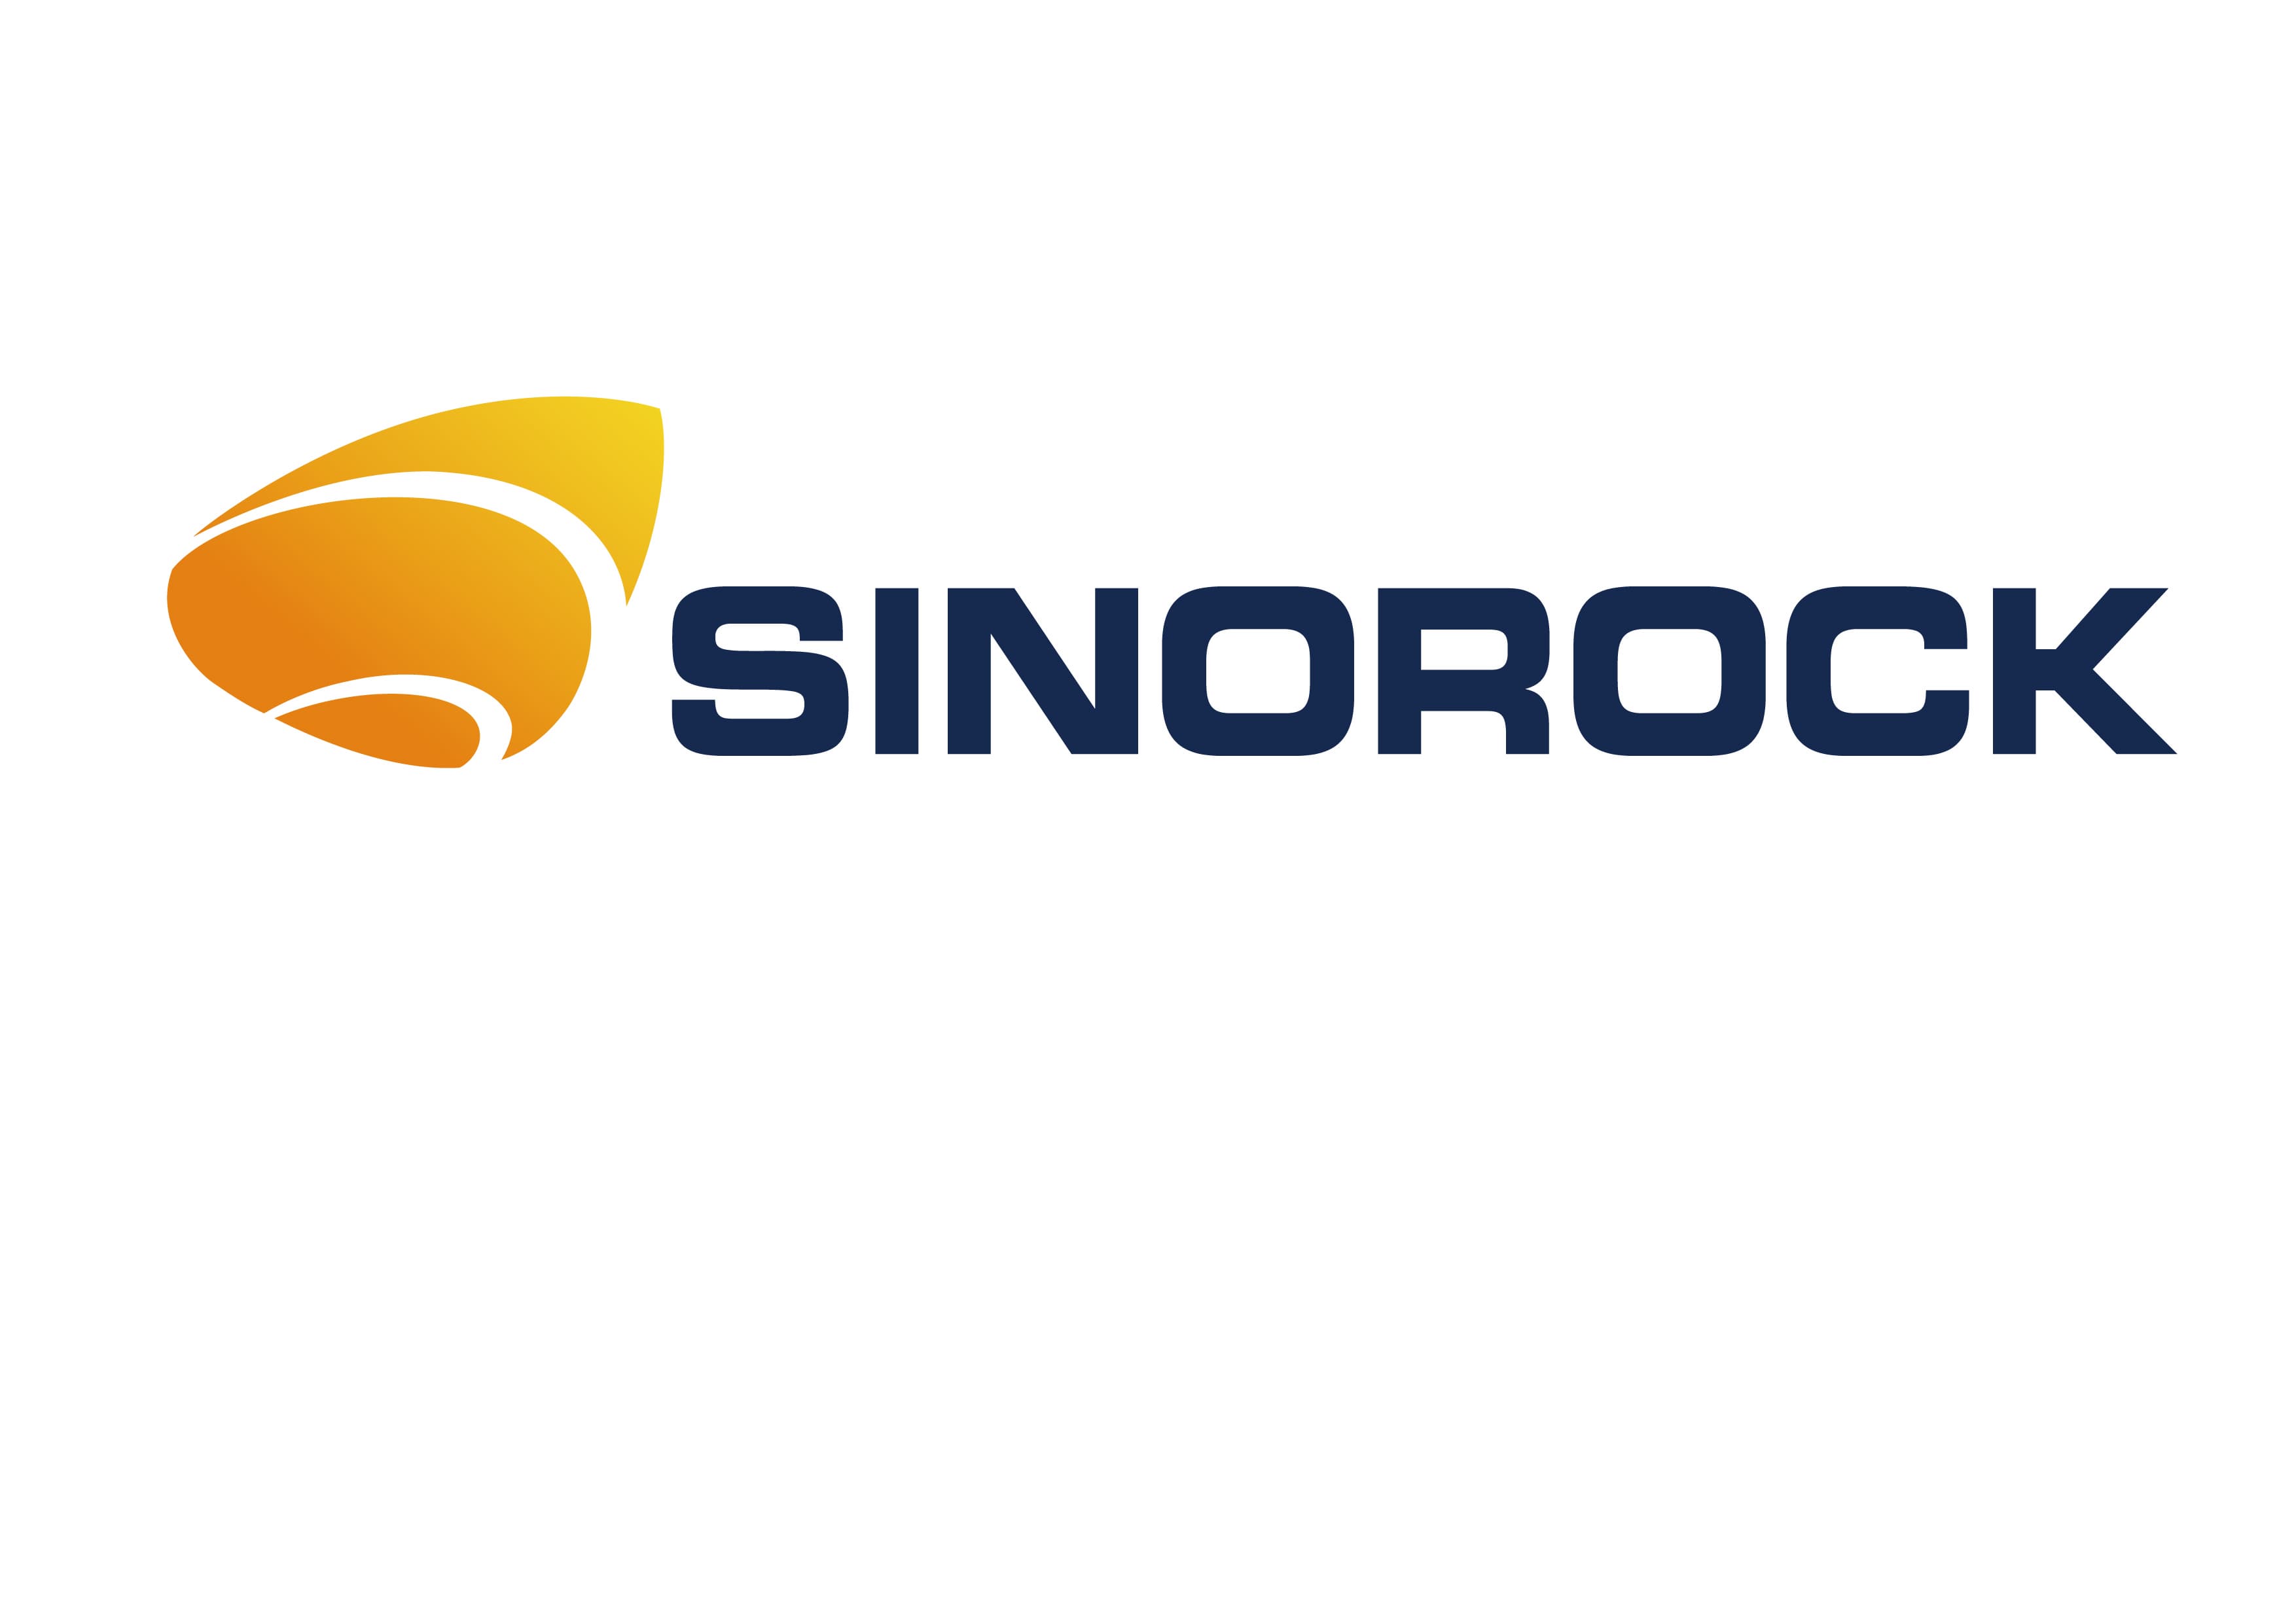 Luoyang Sinorock Engineering Material Co., Ltd.